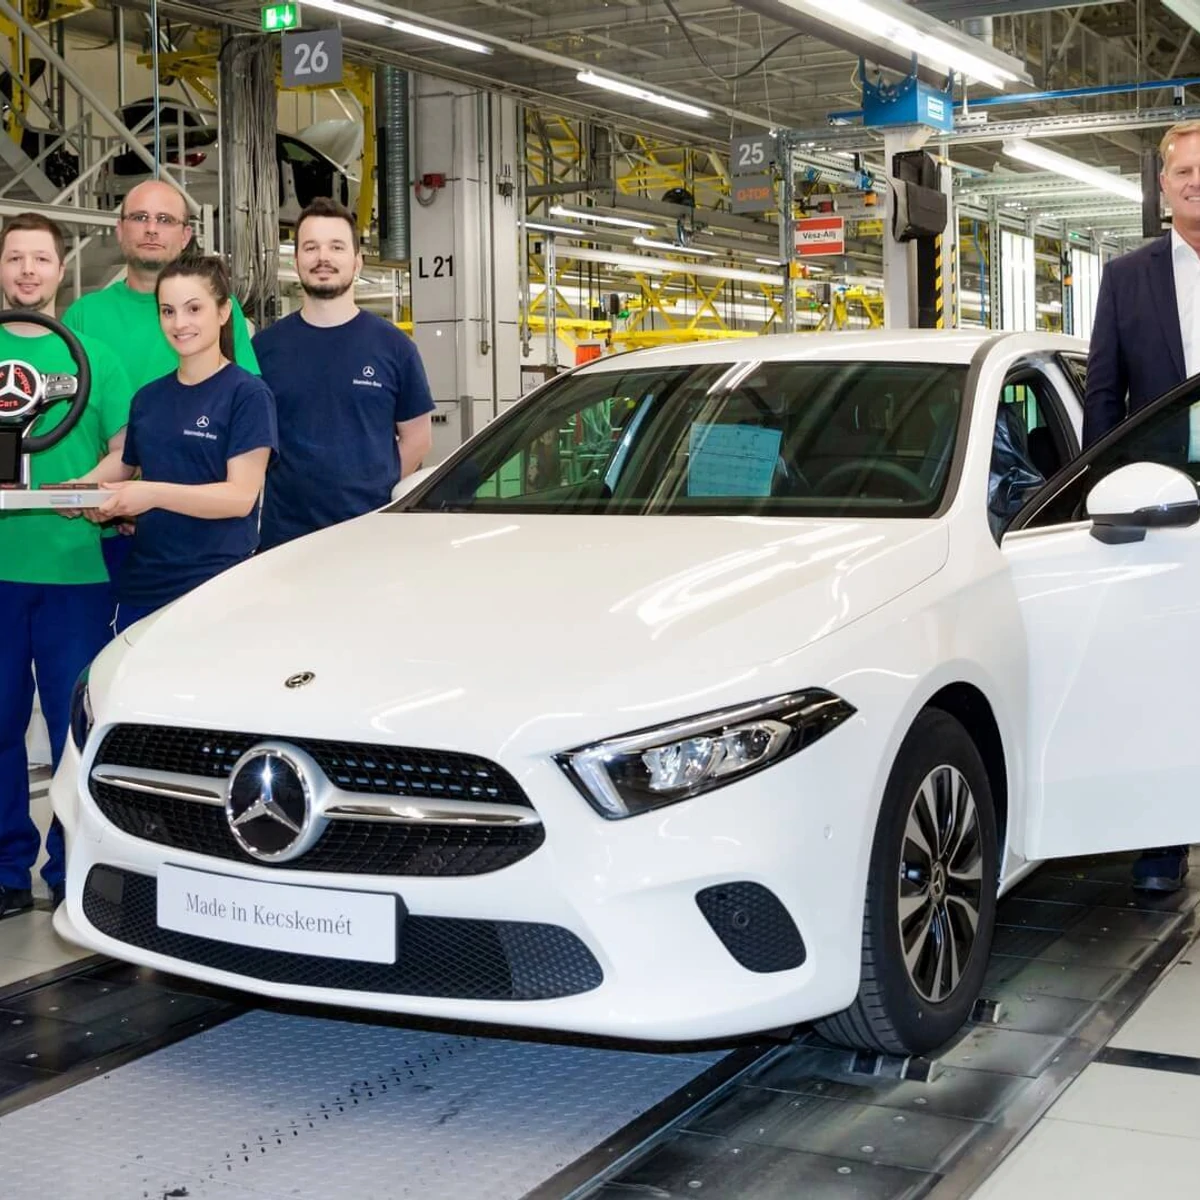 Mercedes A-class production line